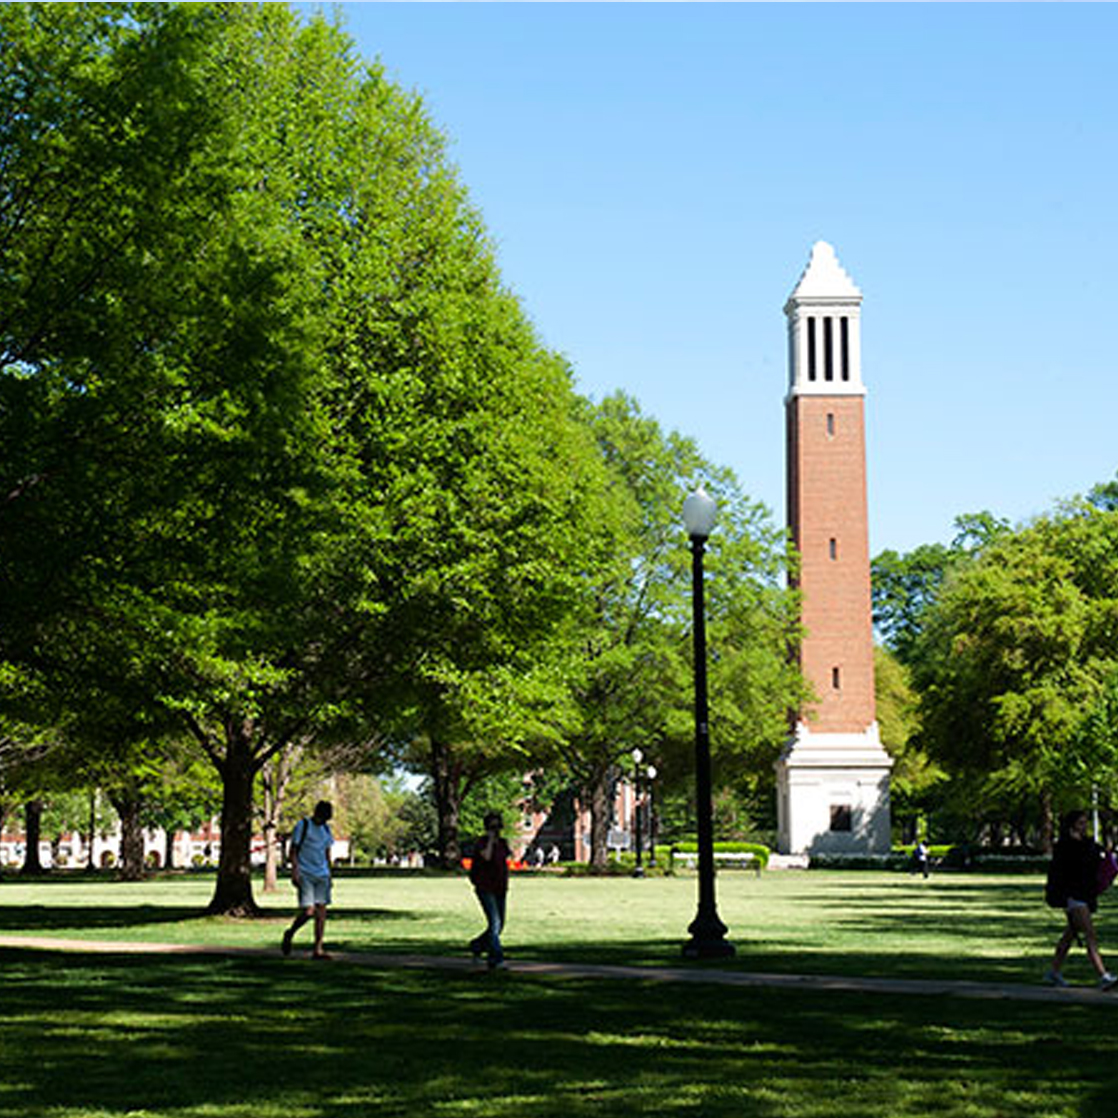 University of Alabama